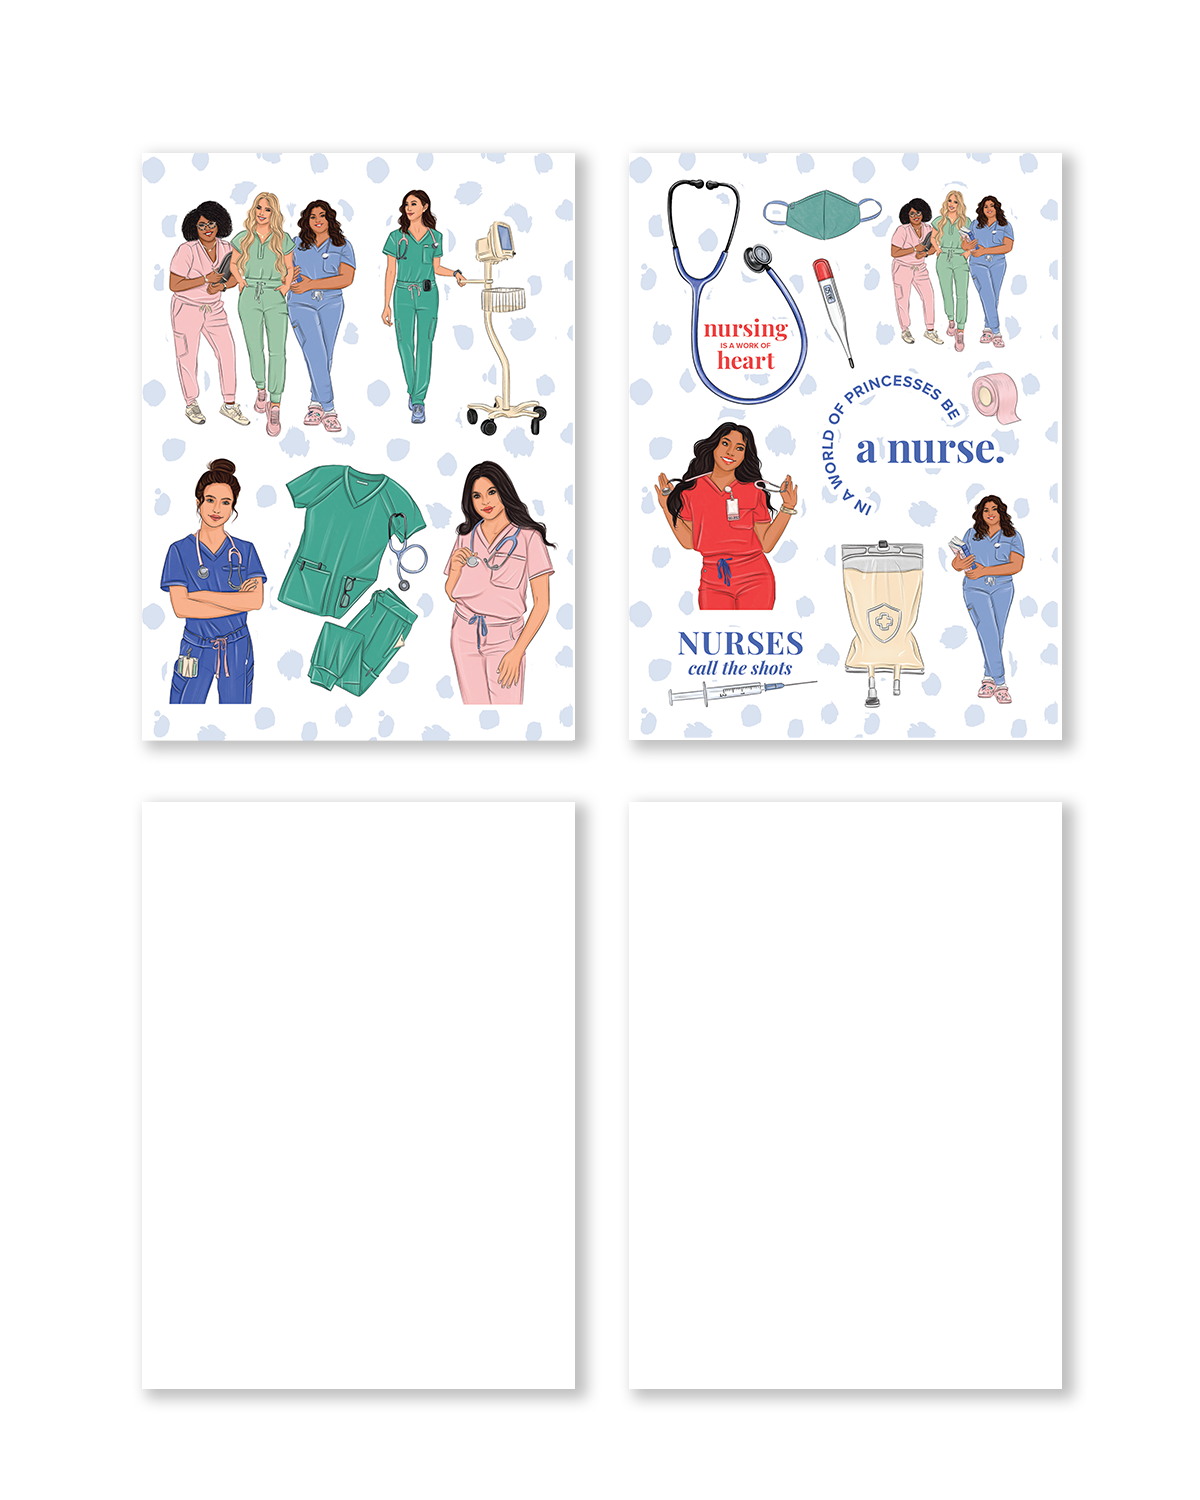 Nurse Planner Sticker Pack (Set of 6)